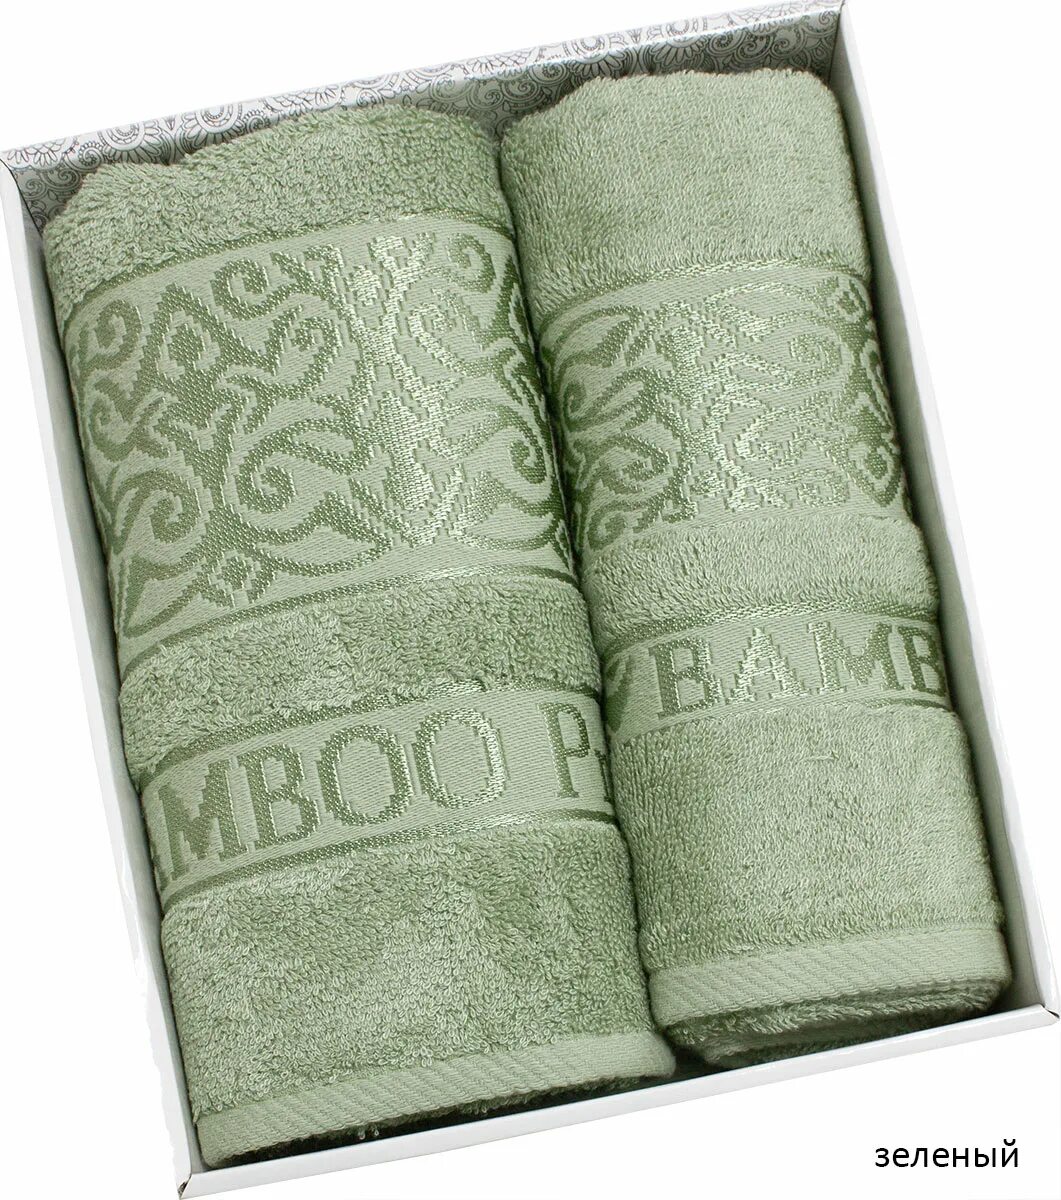 Подарочные полотенца набор купить. Tr000603 набор махровых полотенец 50x90+70x140 c Yaprak. Набор турецких полотенец. Набор полотенец подарочный. Наборы полотенец в подарочной упаковке.